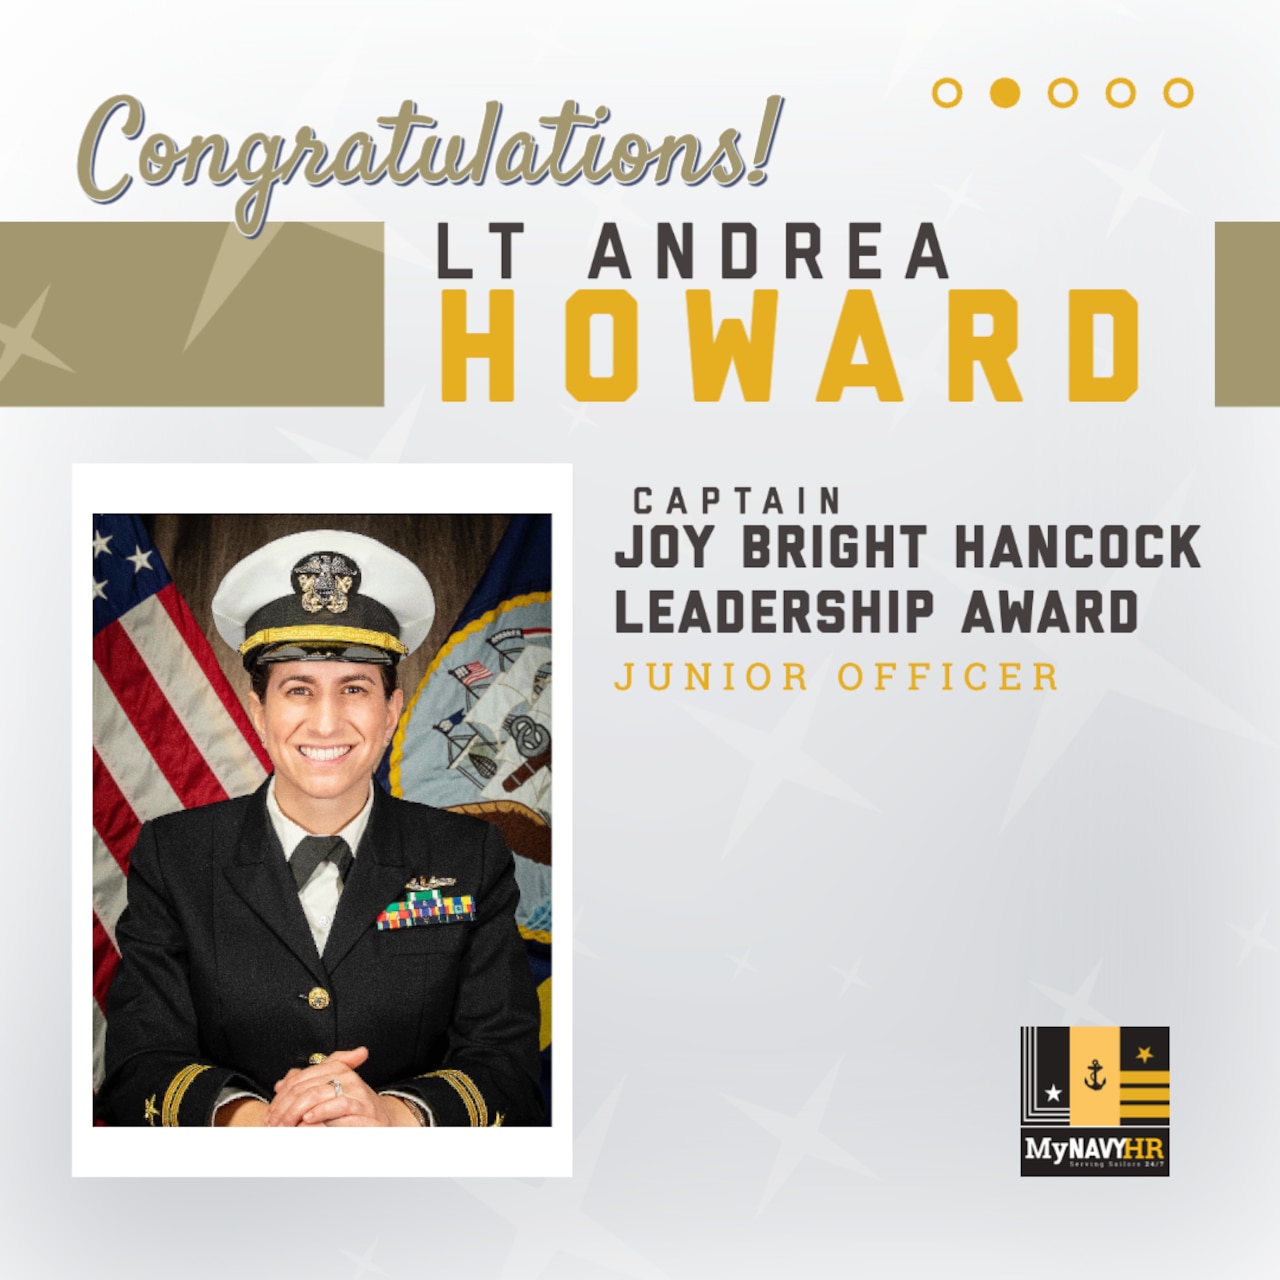 Social media graphic highlighting the 2023 Captain Joy Bright Hancock Leadership Award Winner, Junior Officer Category - LT Andrea Howard